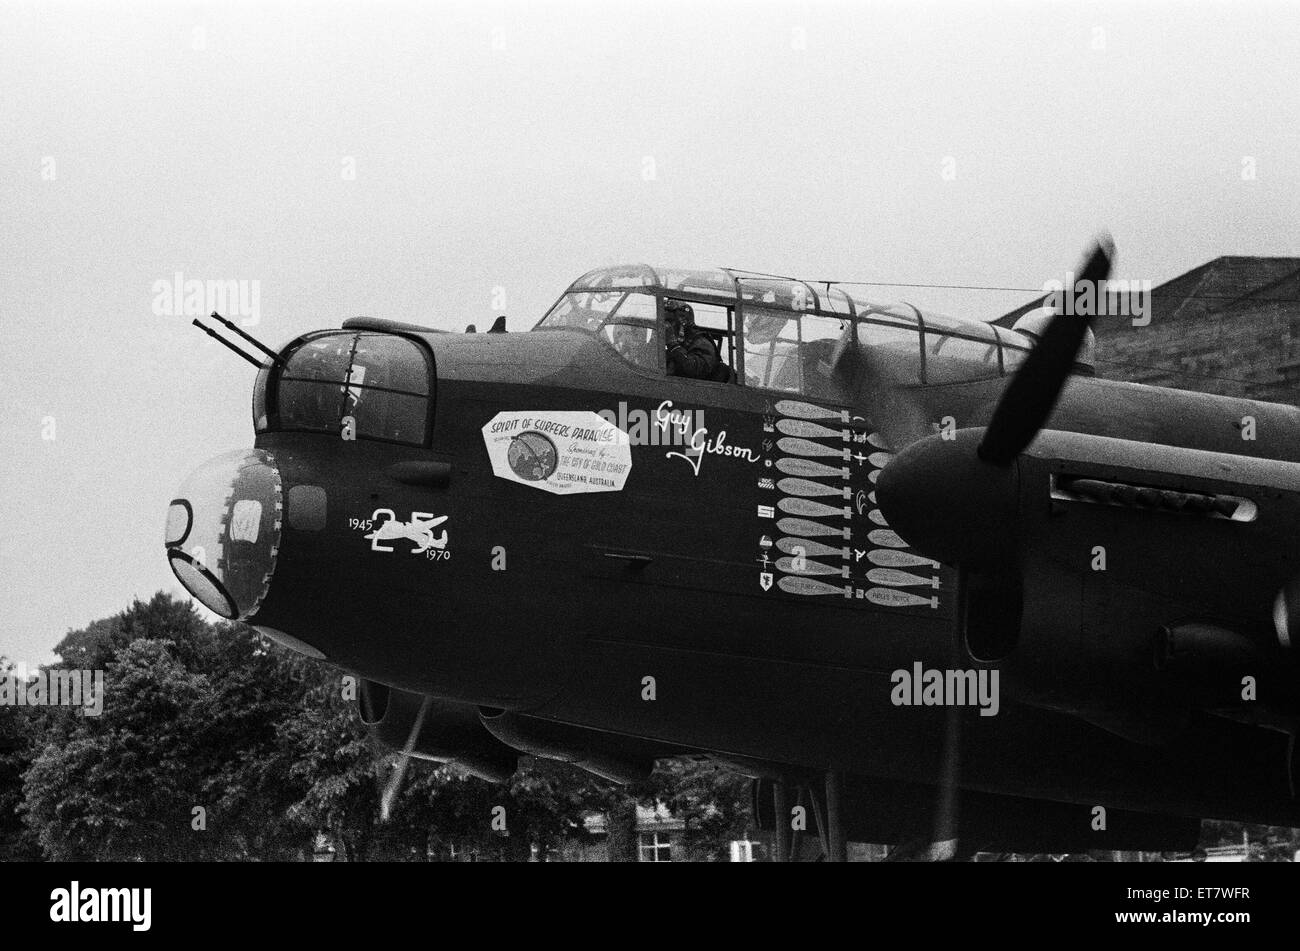 Le dernier bombardier Lancaster à voler. Il a décollé de l'aérodrome de la RAF Hullavington près de Swindon en route pour Blackpool où il sera opérationnel pendant une courte période avant d'être stocké dans un musée de l'aviation. Le Lancaster avait été hangered à la RAF où il avait été fait état de navigabilité, et restauré. Le décollage a été retardé à cause de la pluie et de la brume. 26 juin 1970. Banque D'Images